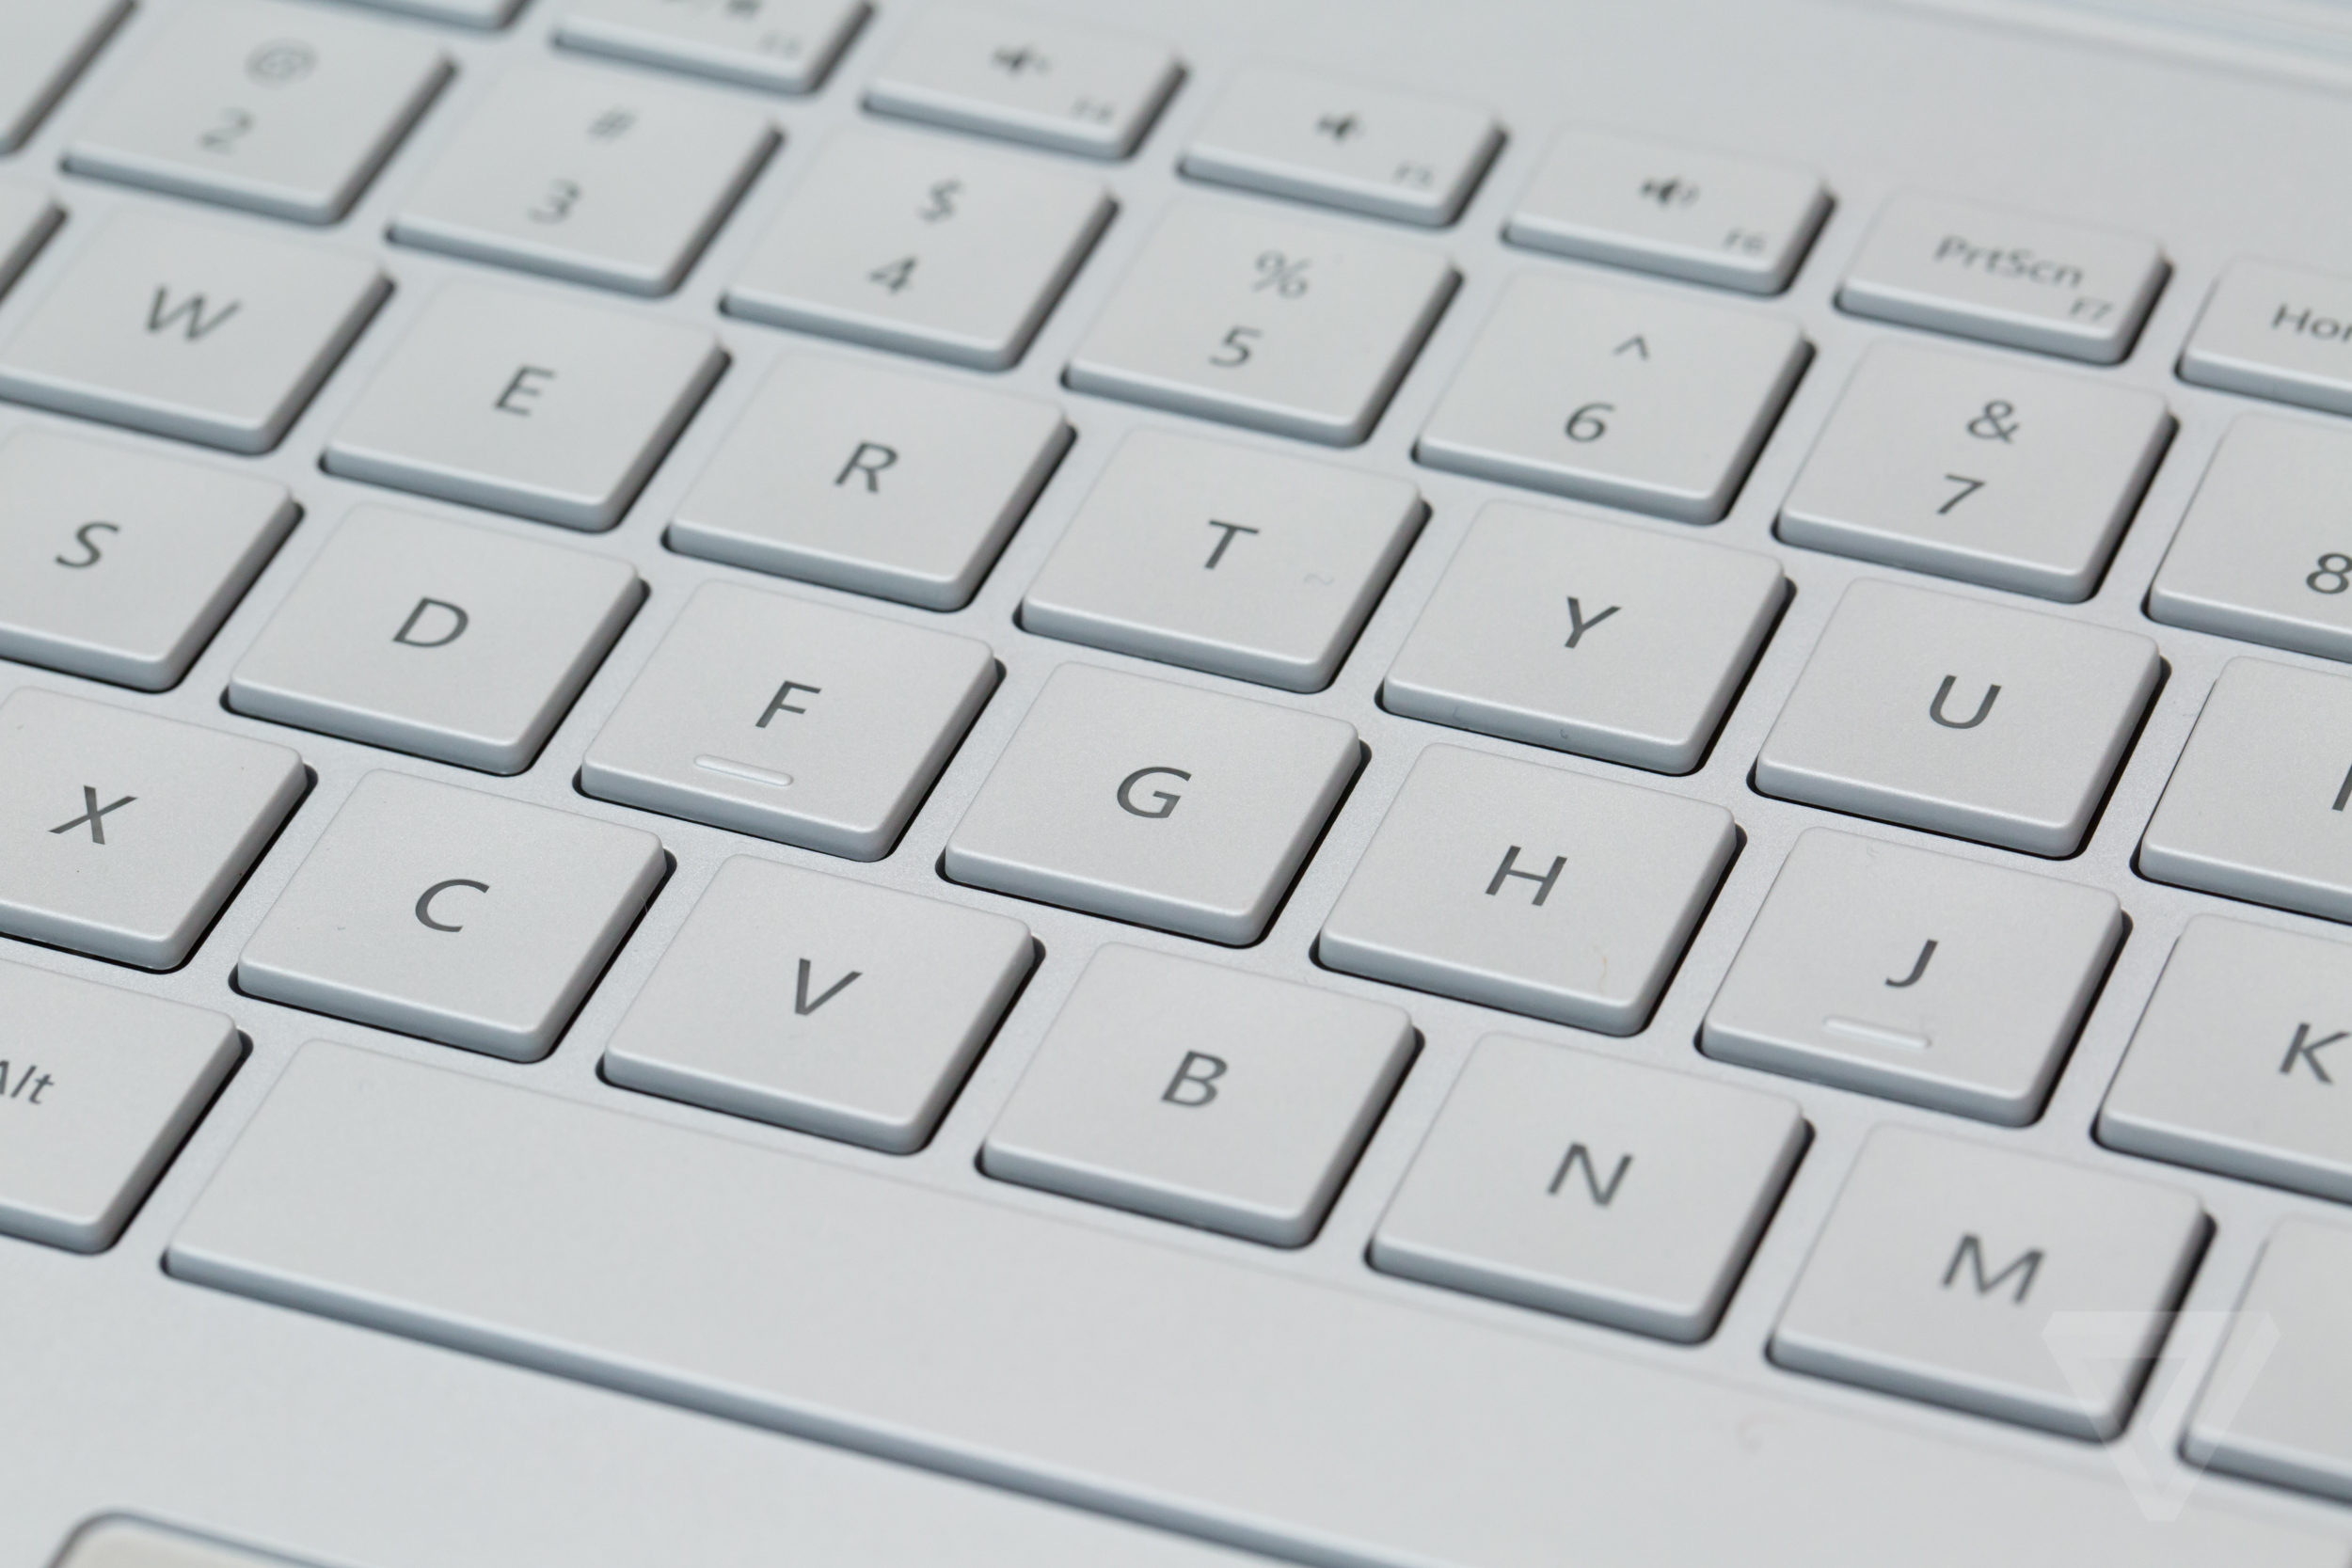 Surface Book keyboard